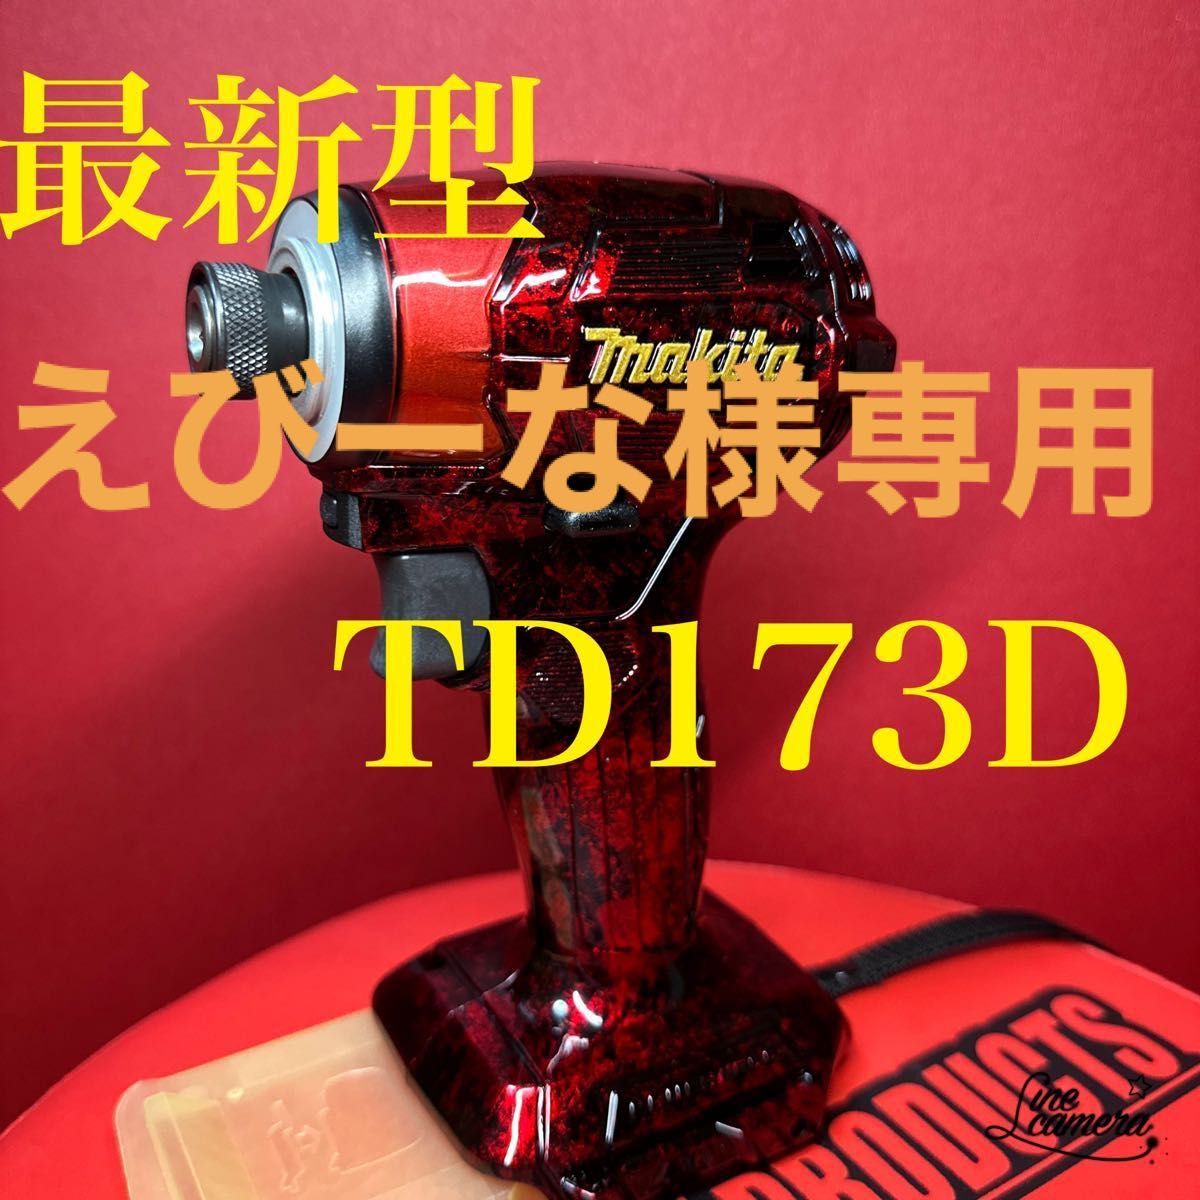 最新型 マキタインパクトドライバー TD173D スーパーカスタム-